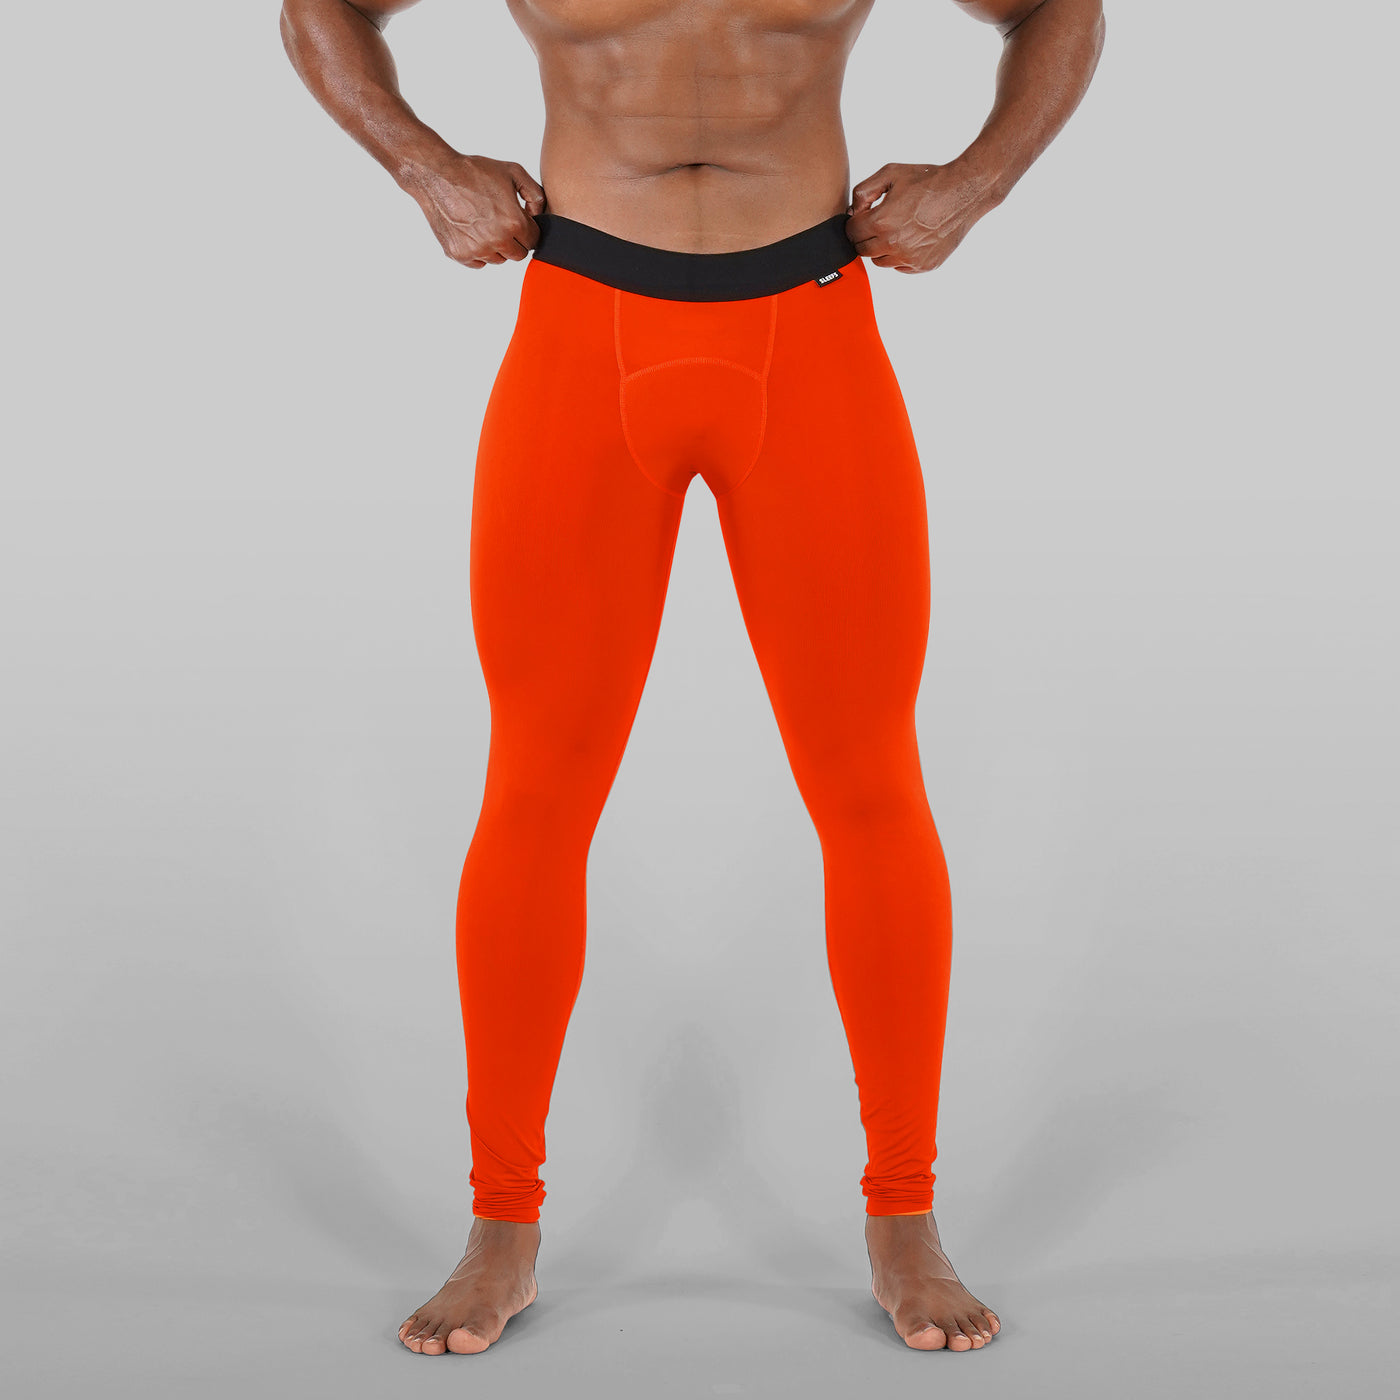 Hue Orange Tights For Men